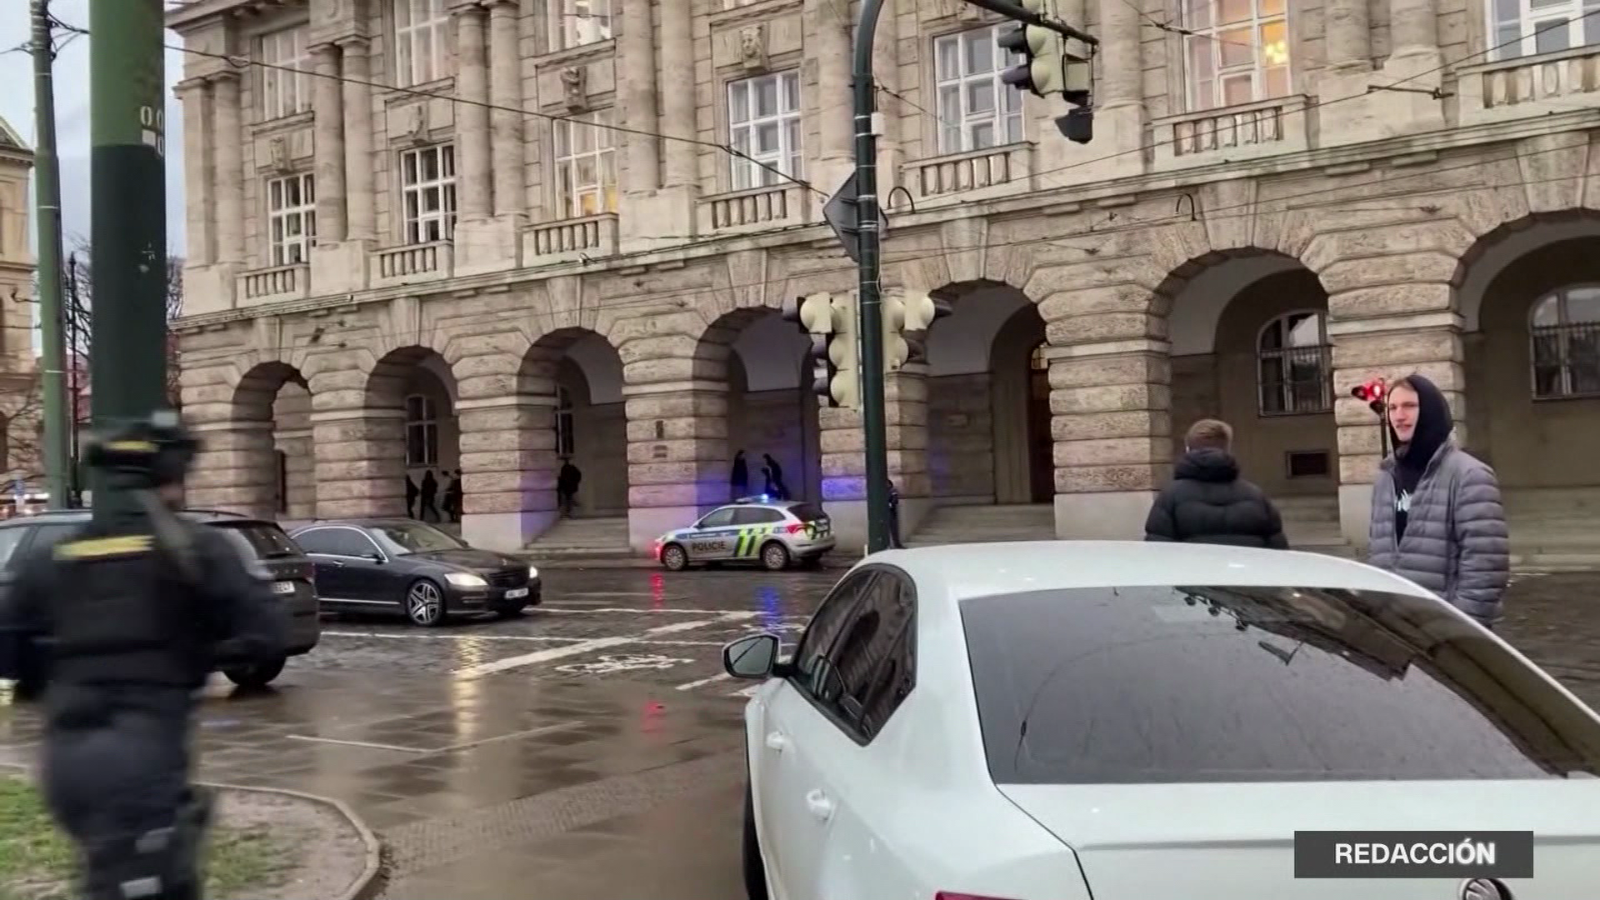 15 muertos y decenas de heridos en tiroteo en universidad de Praga